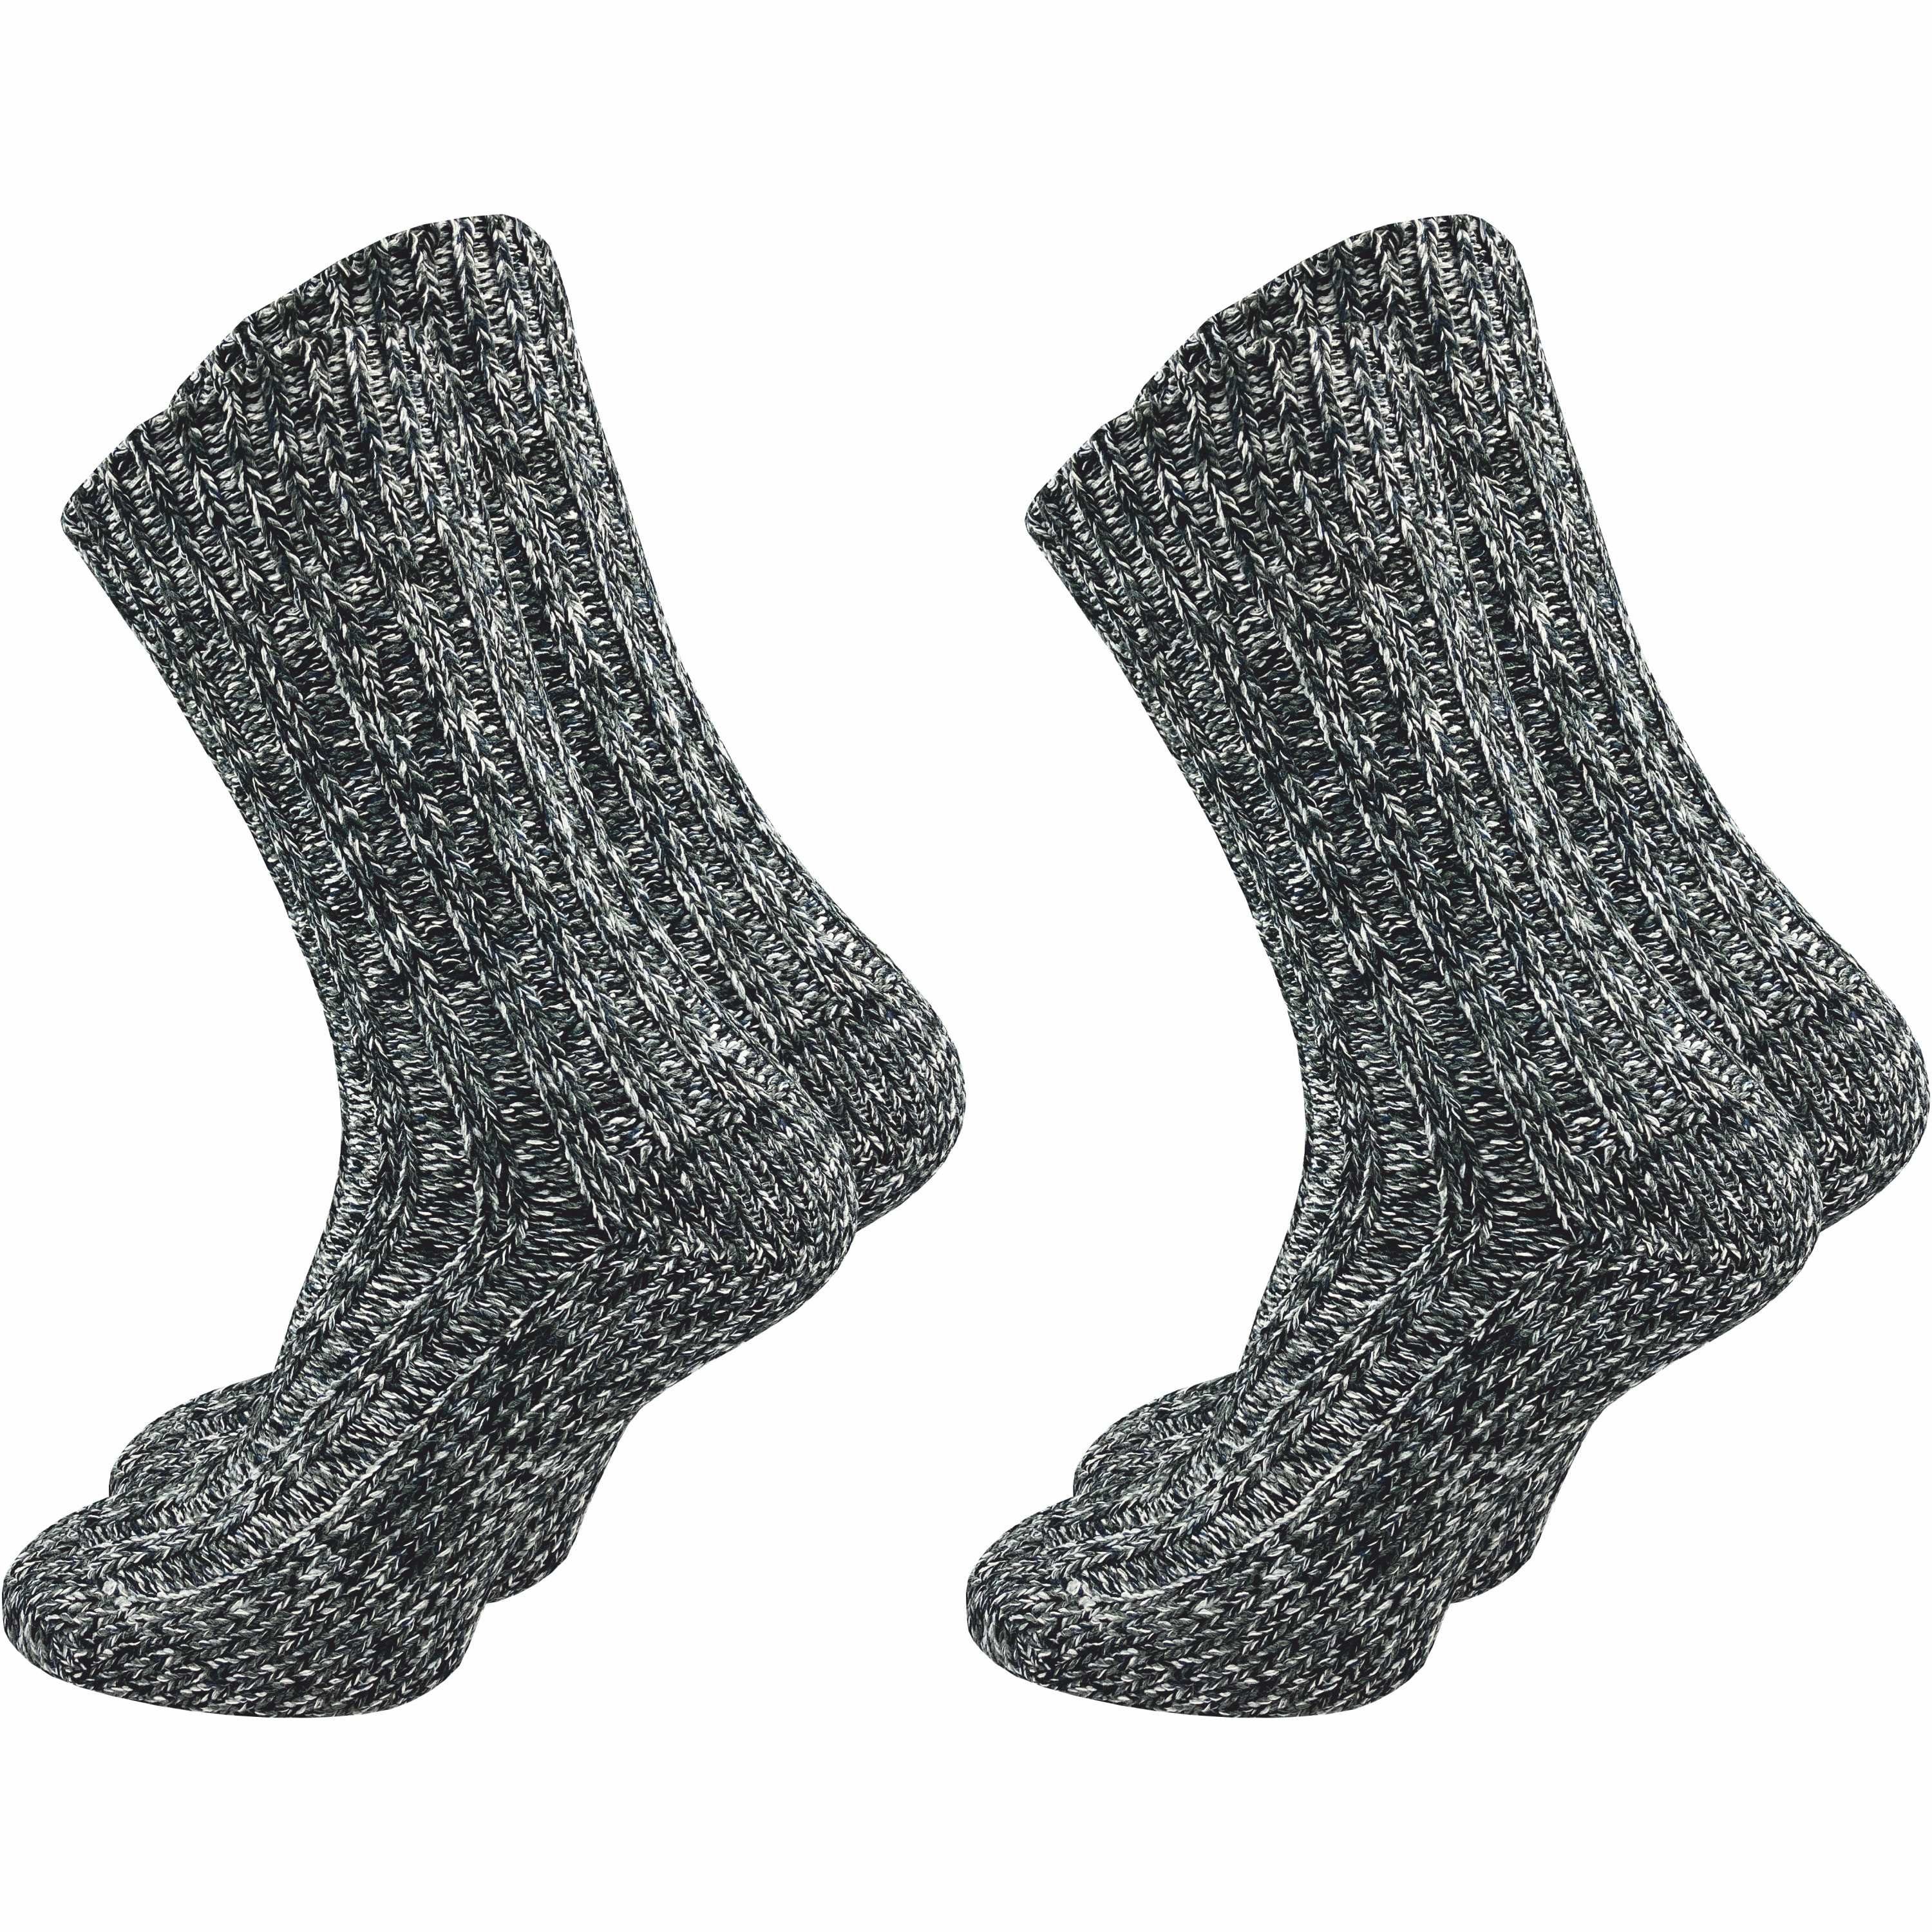 GAWILO Norwegersocken für Herren wie selbstgetrickt mit Komfortbund - bunt  & warm (2 Paar) Wintersocken in blau & schwarz sorgen für warme Füße an  kalten Tagen